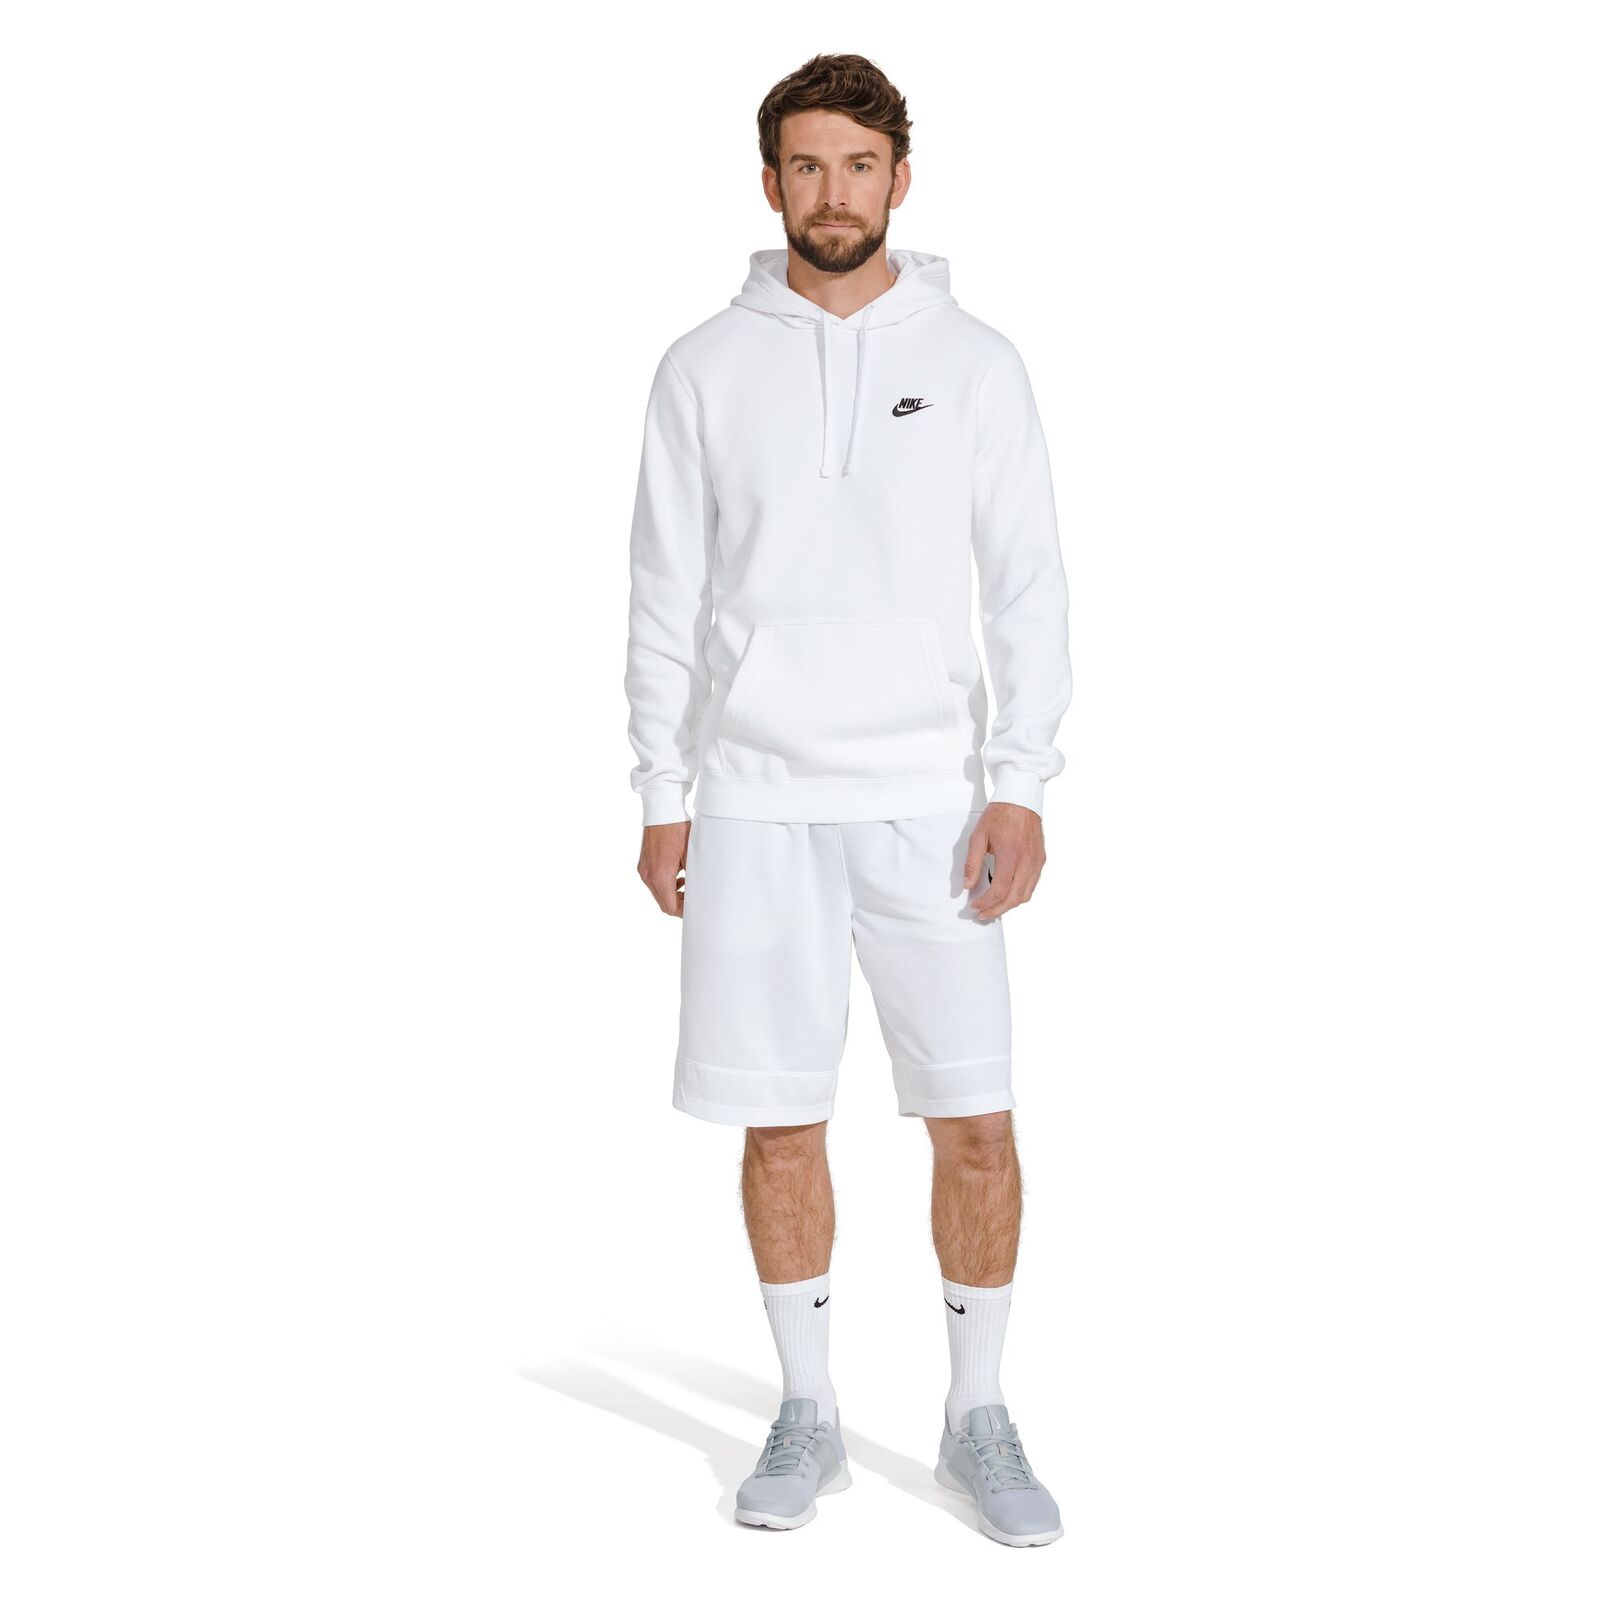 Nike Everyday Cushioned White Unisex Crew Socks 6 Pack